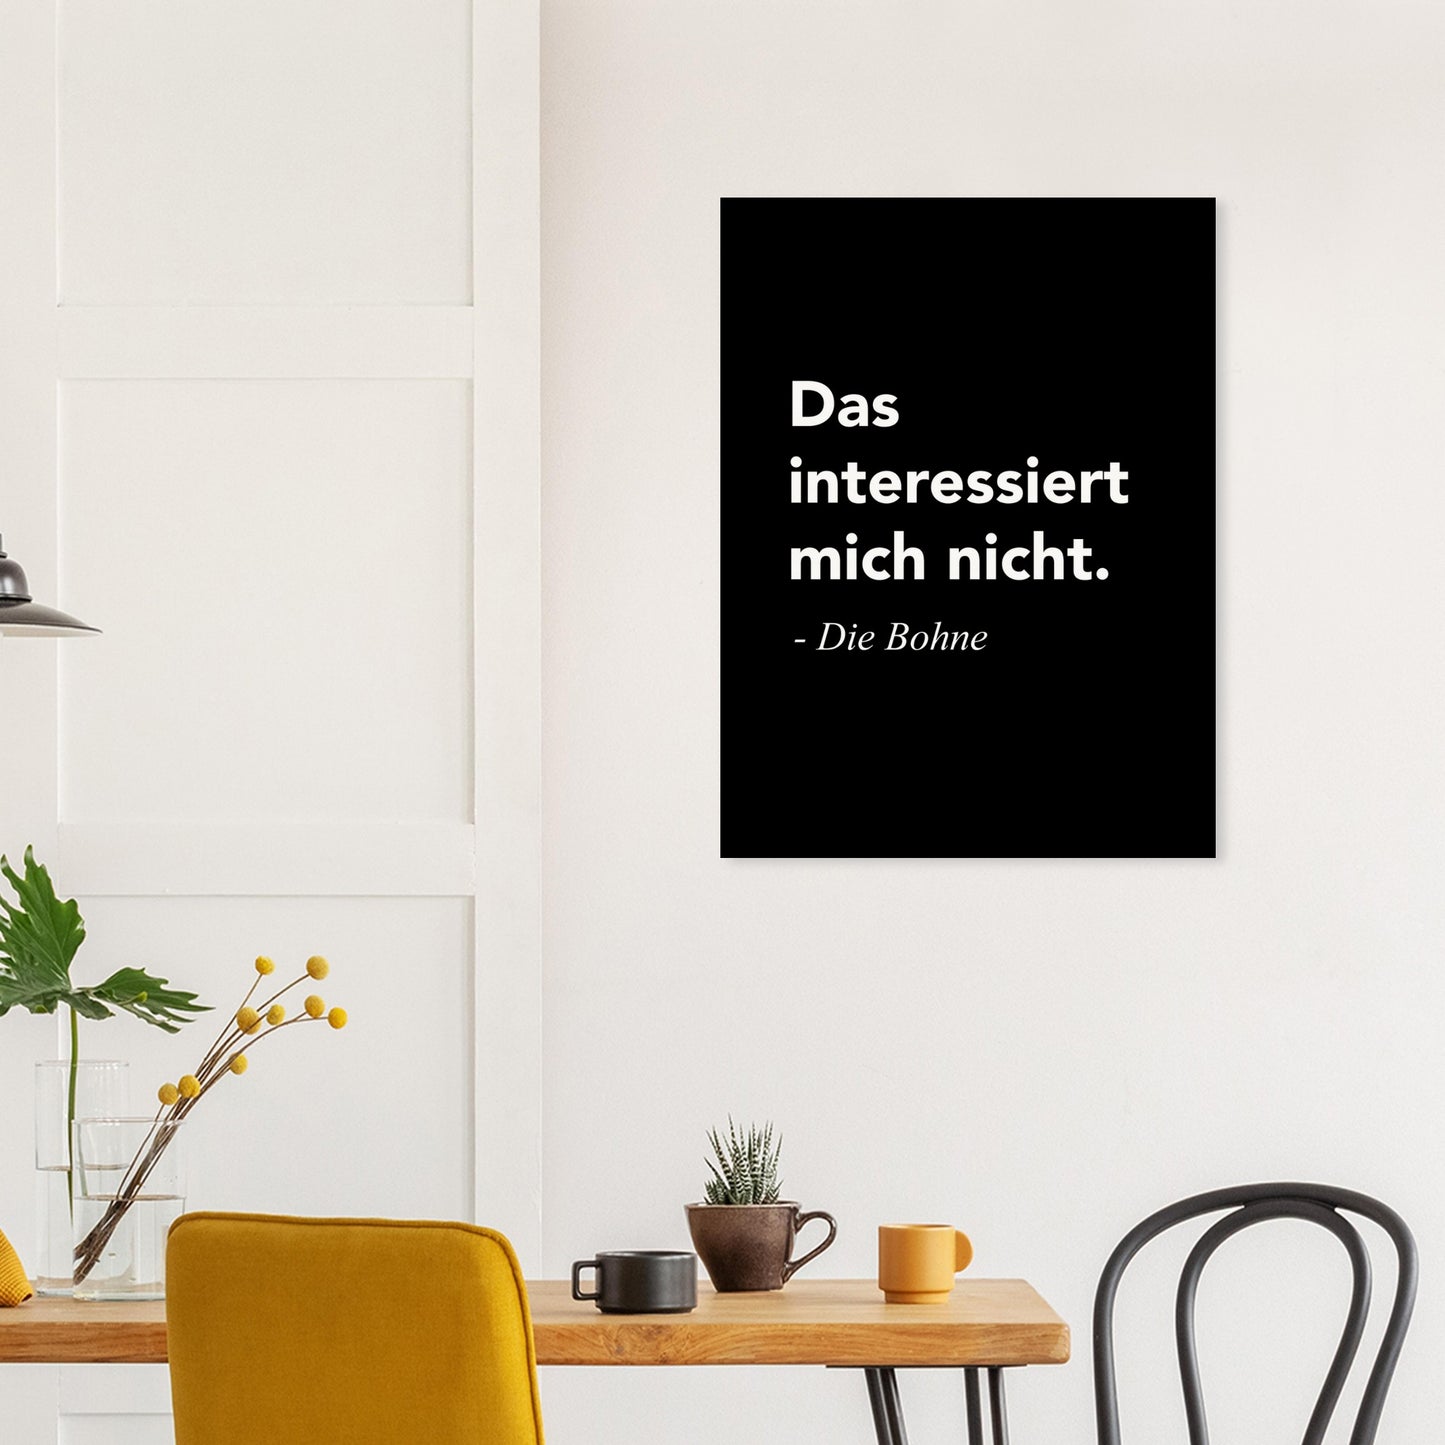 Poster mit Motivationsspruch - Das interessiert mich nicht - Die Bohne - Poster in Museumsqualität mit Spruch - Background black - Fineart